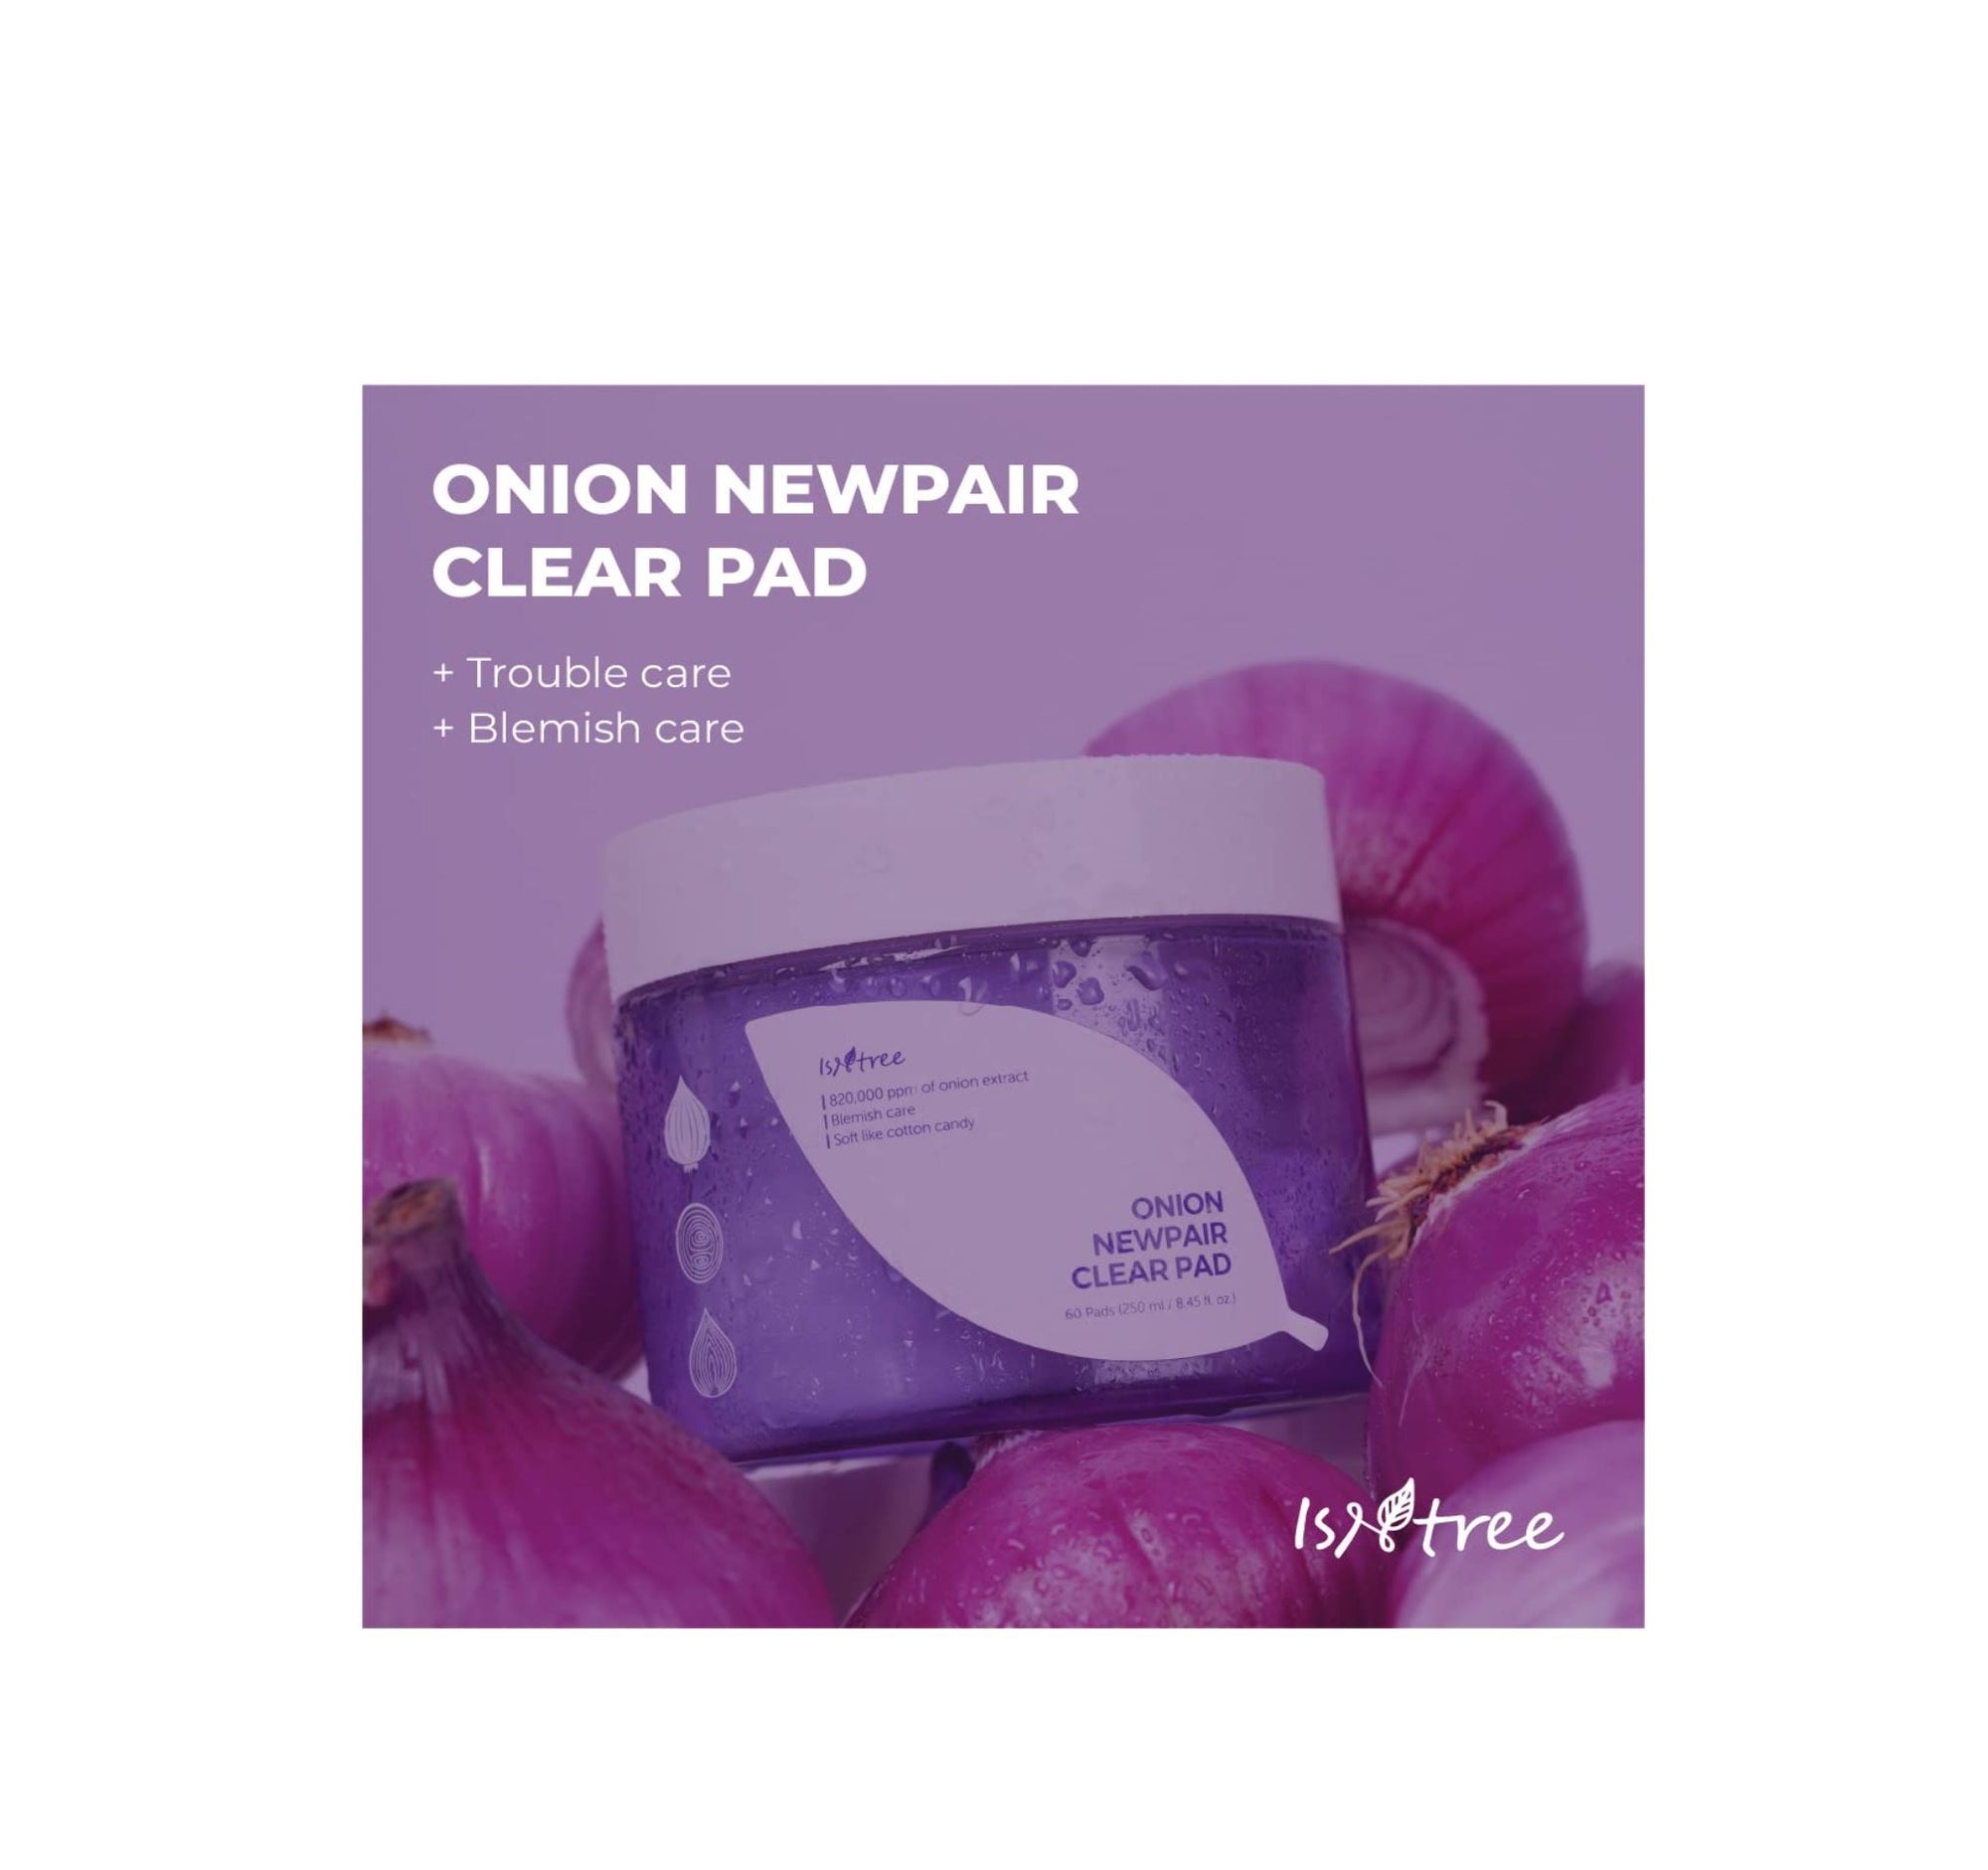 Onion Newpair Clear Pad